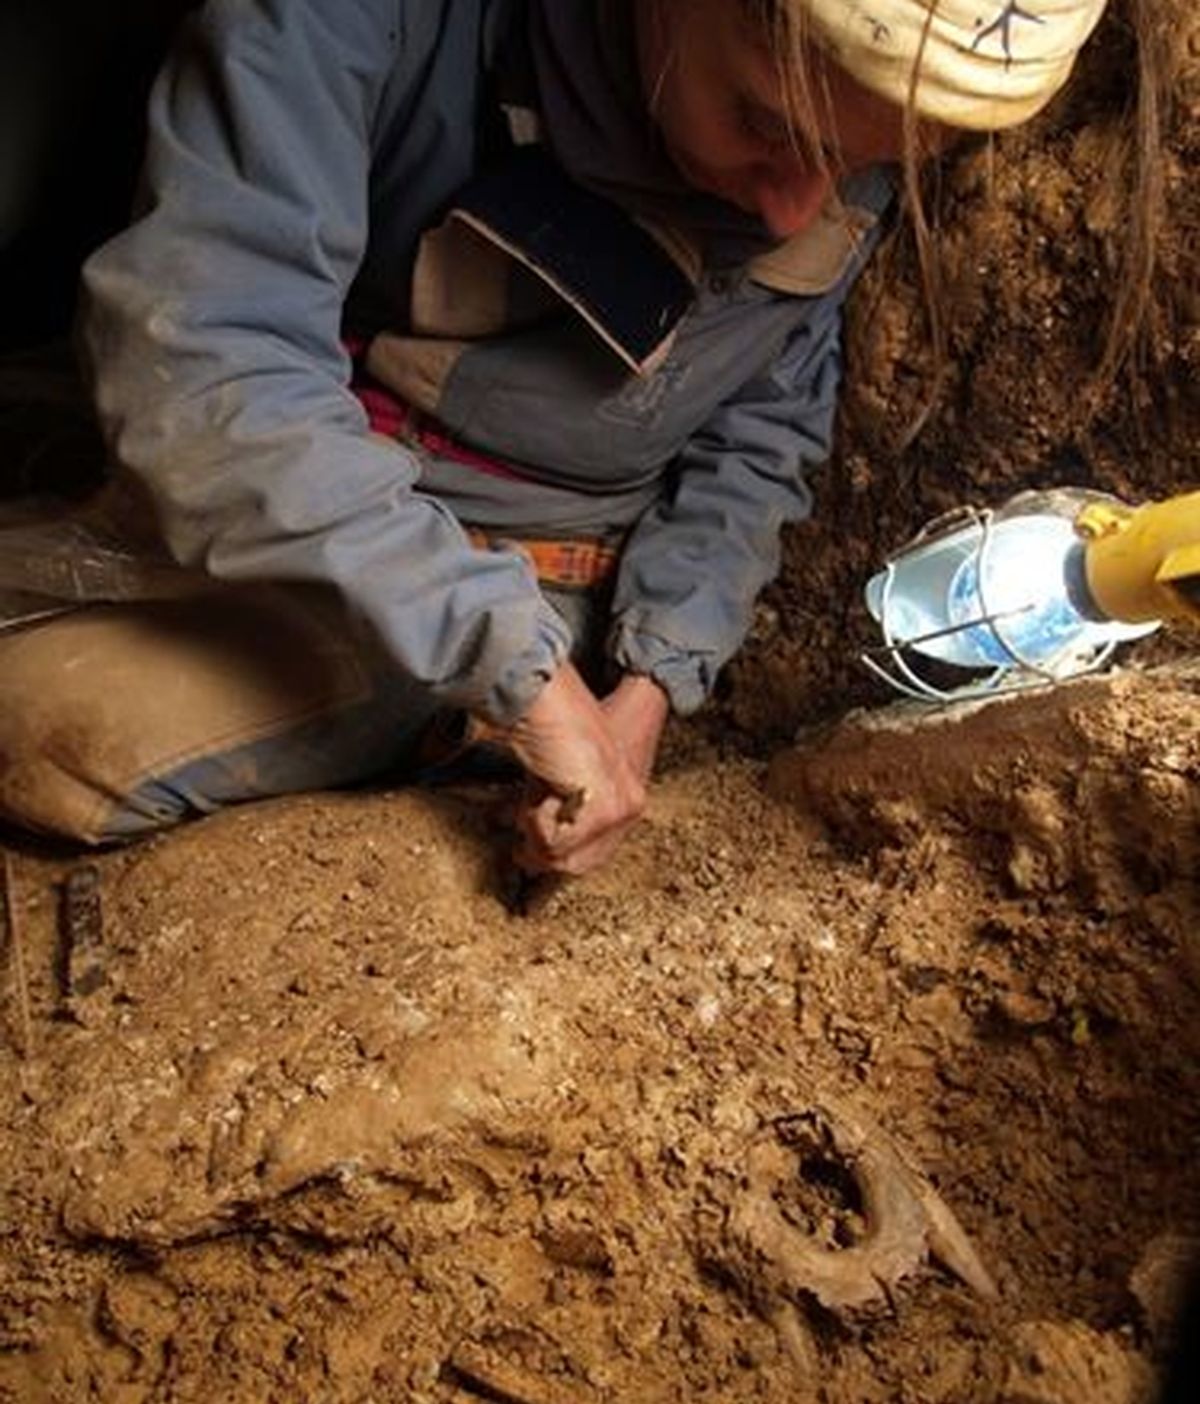 Descifran el genoma de un oso de hace 400.000 años hallado en Atapuerca